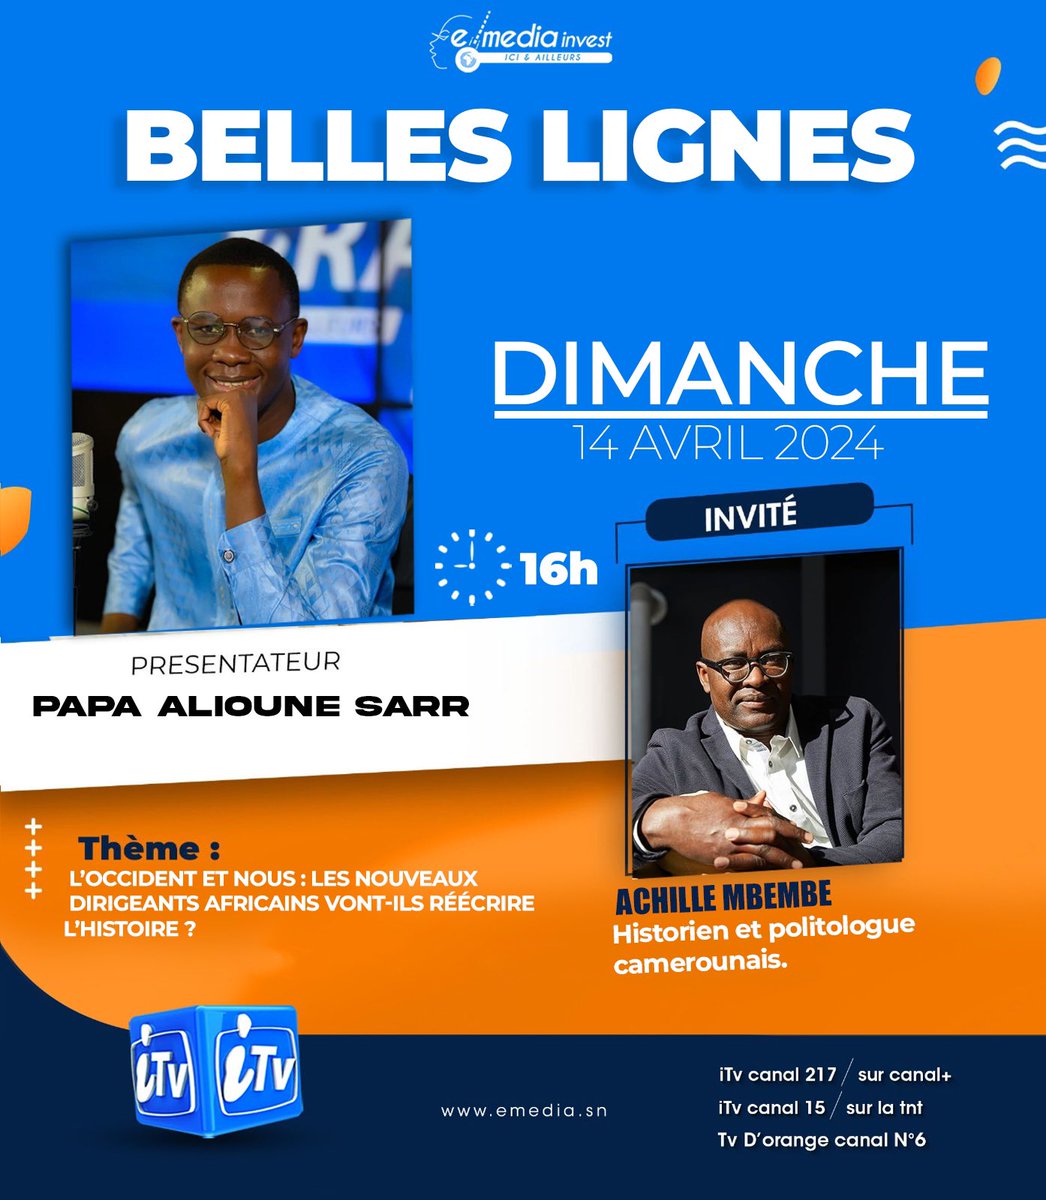 #Belleslignes avec l’écrivain et historien camerounais Achille Mbembe. 

Ce dimanche à 16h sur @itv_sn